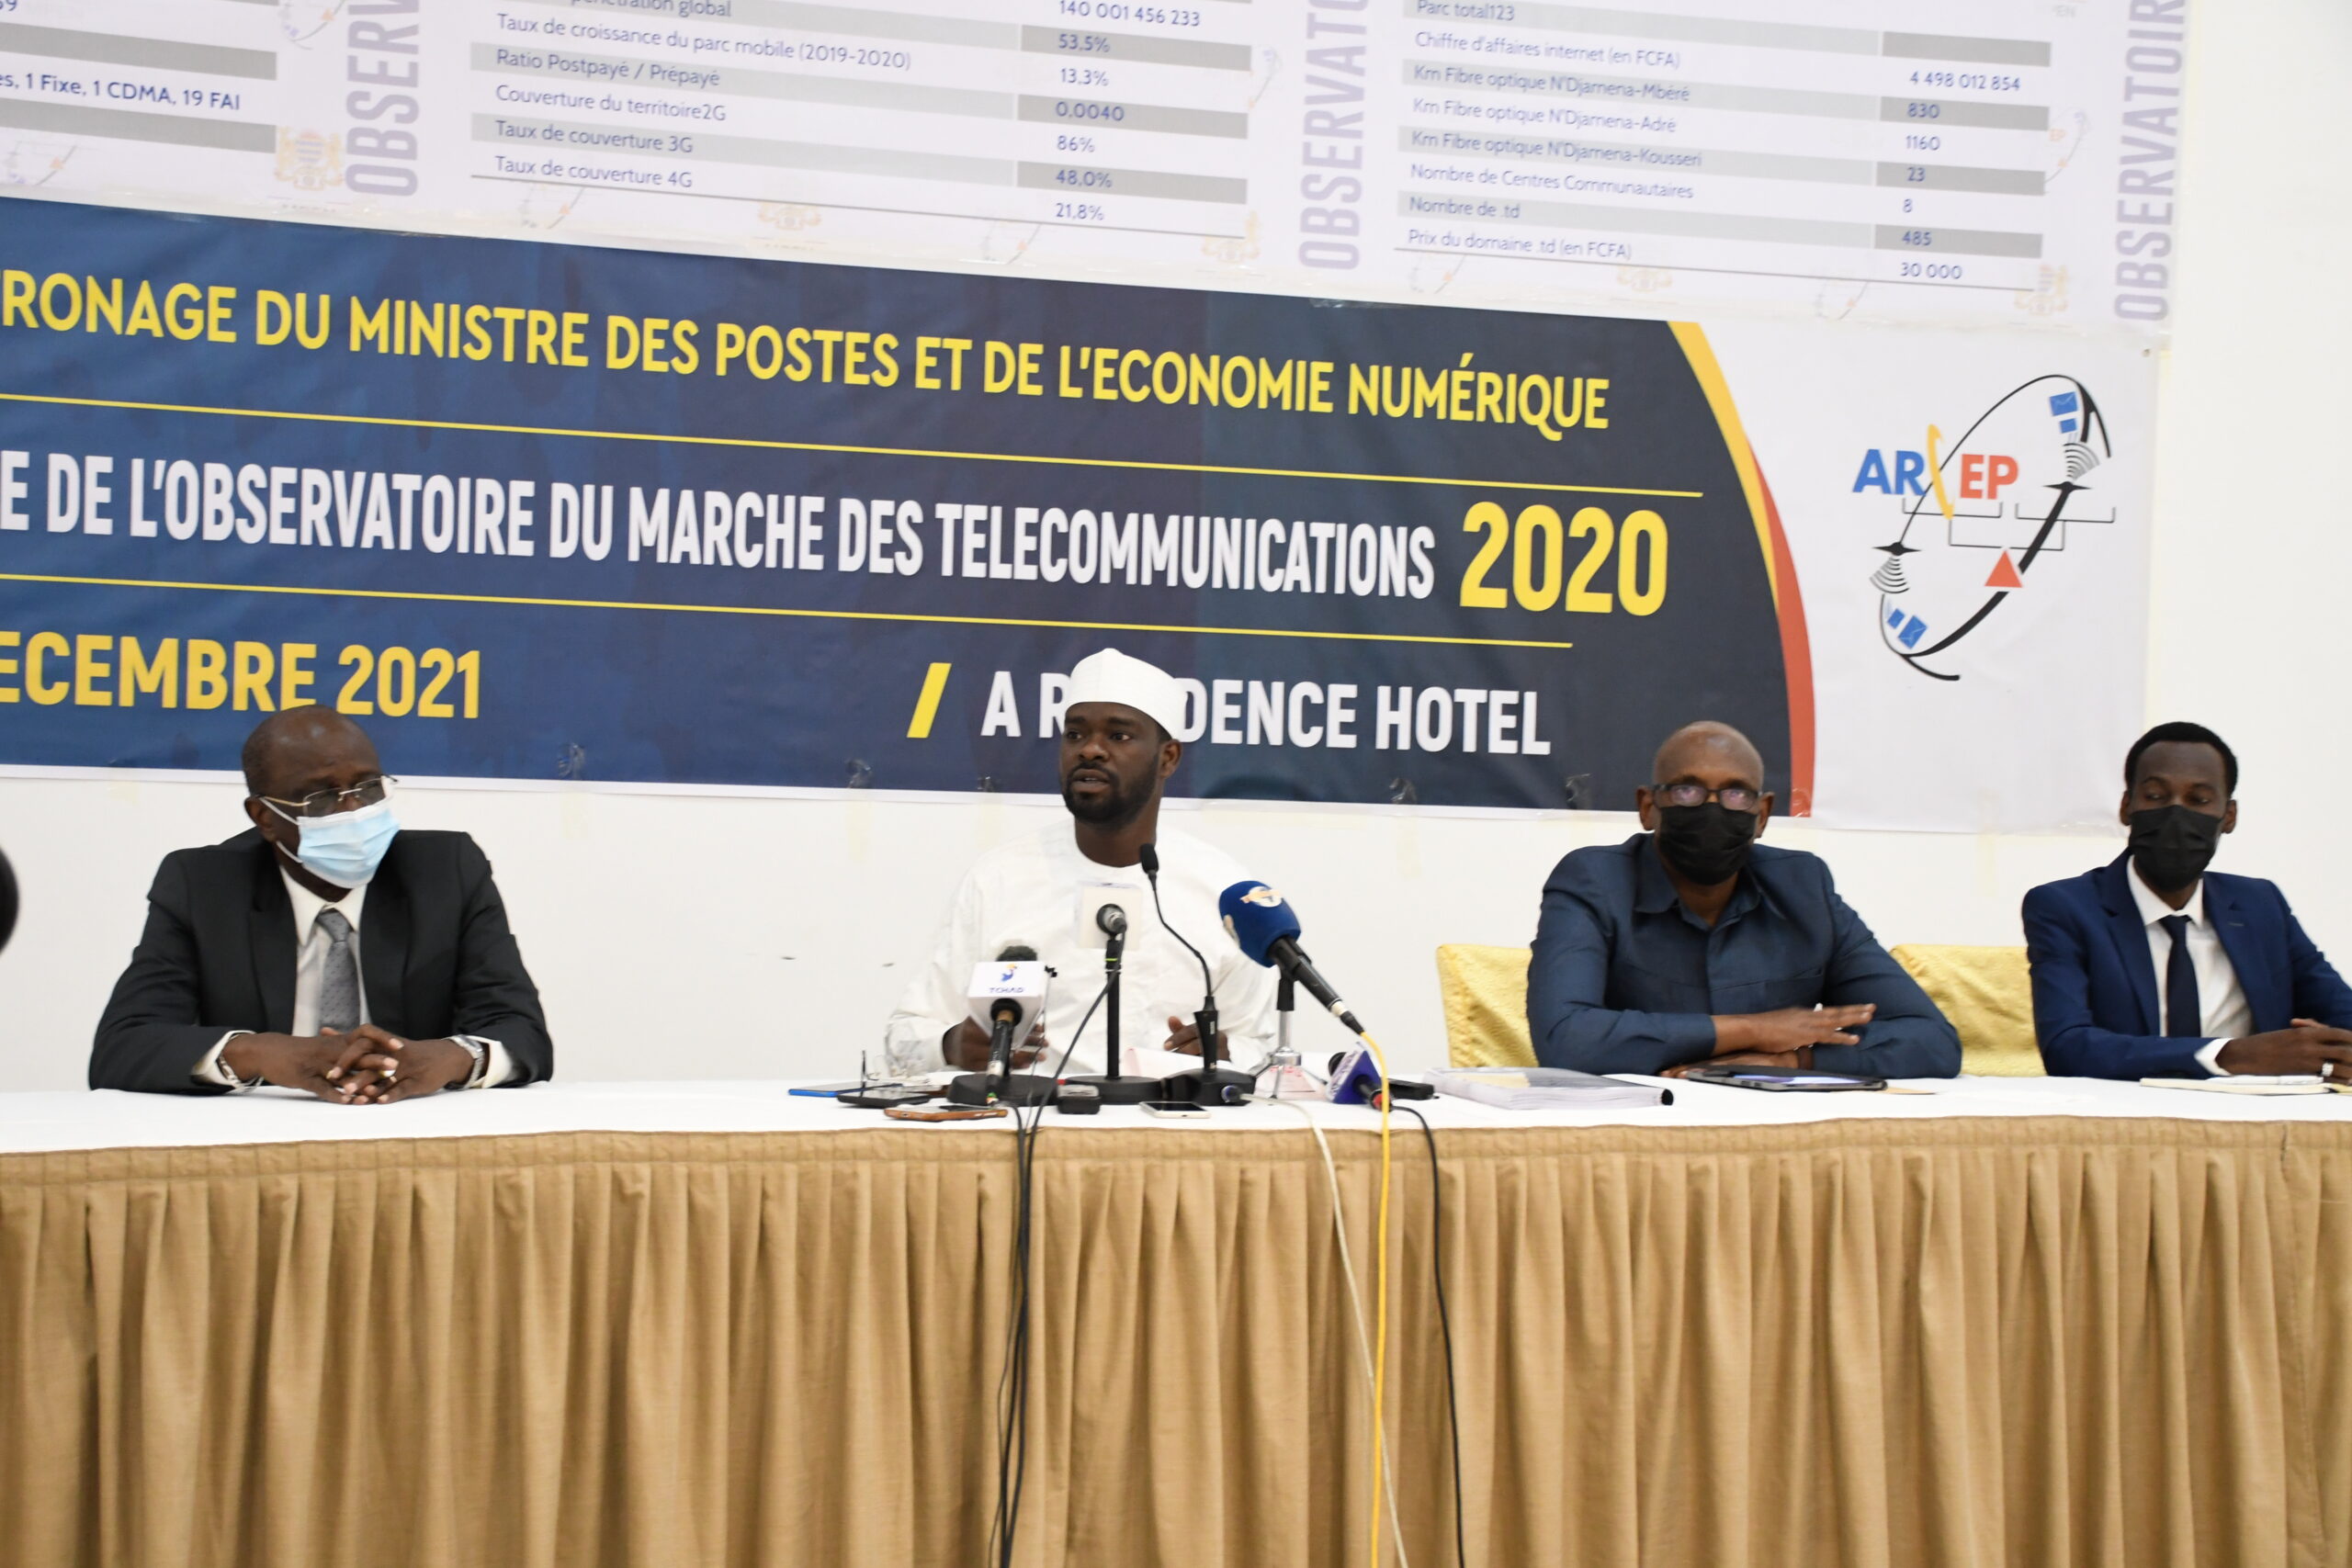 Coût de l’internet : “Il est de notre devoir de revoir ces tarifs en baisse”, le ministre des Postes et de l’Économie numérique